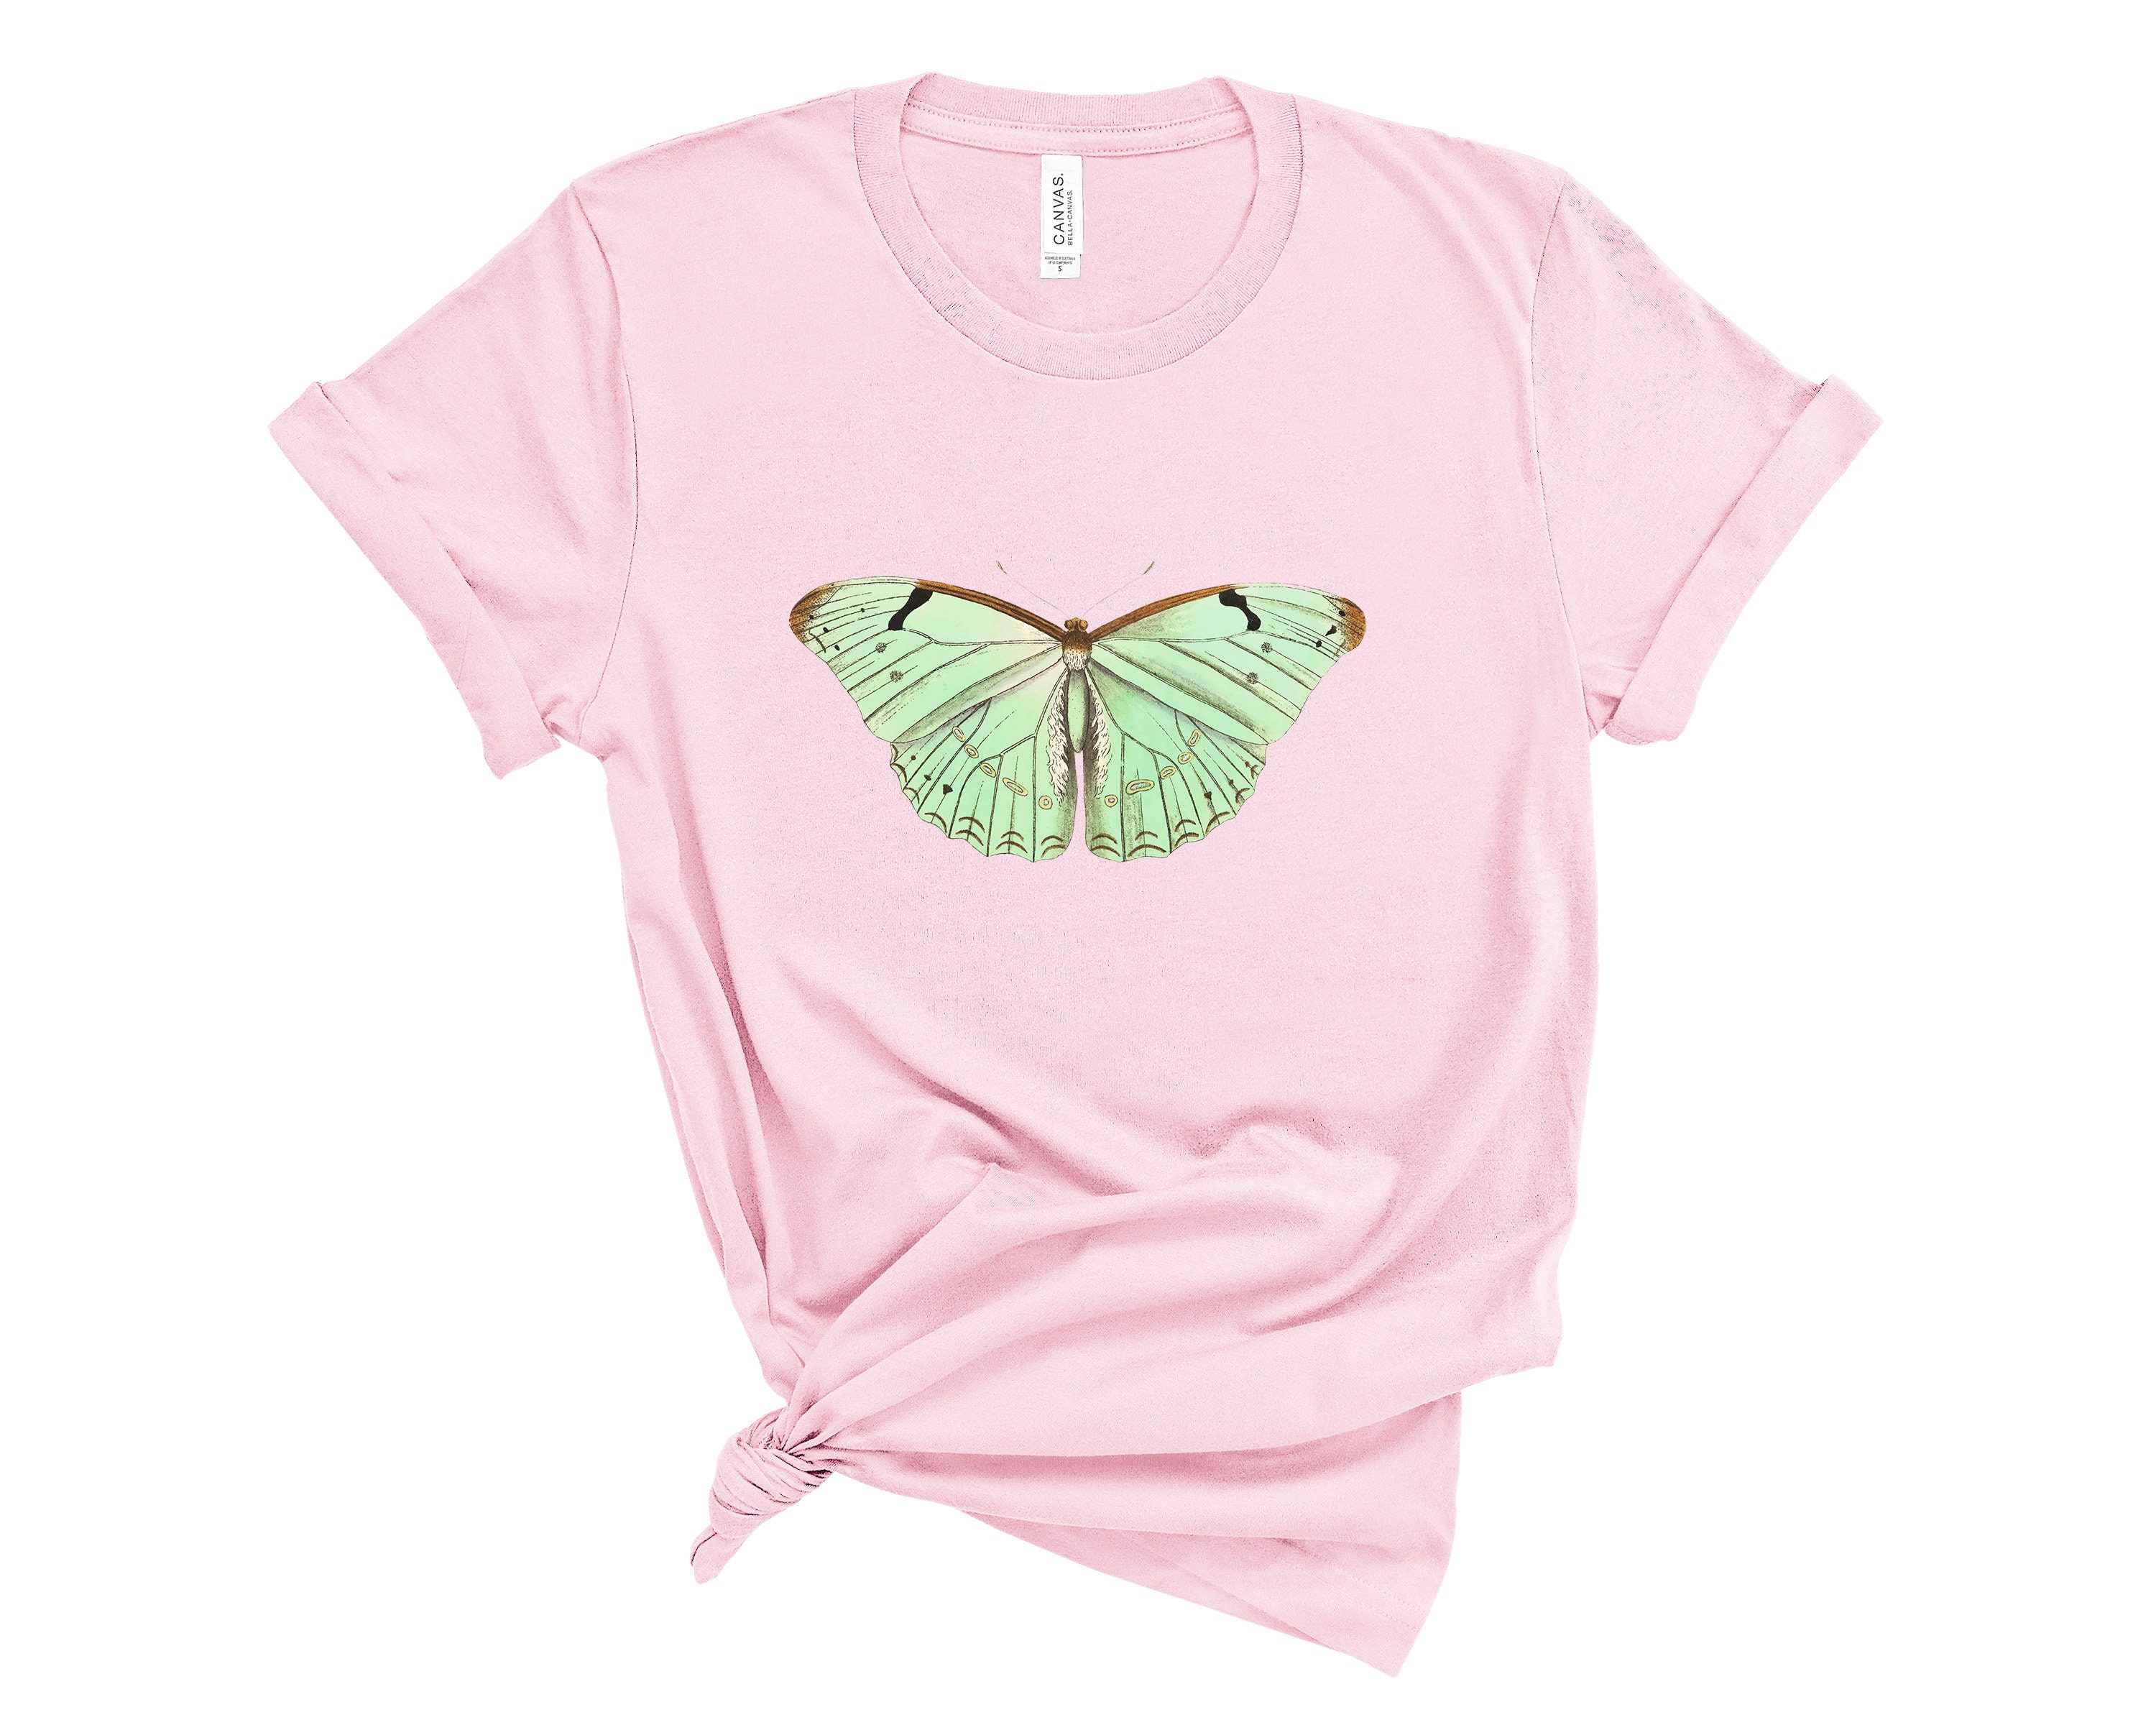 Moth Shirt Aesthetic Clothing Pastel Goth Clothing | Etsy